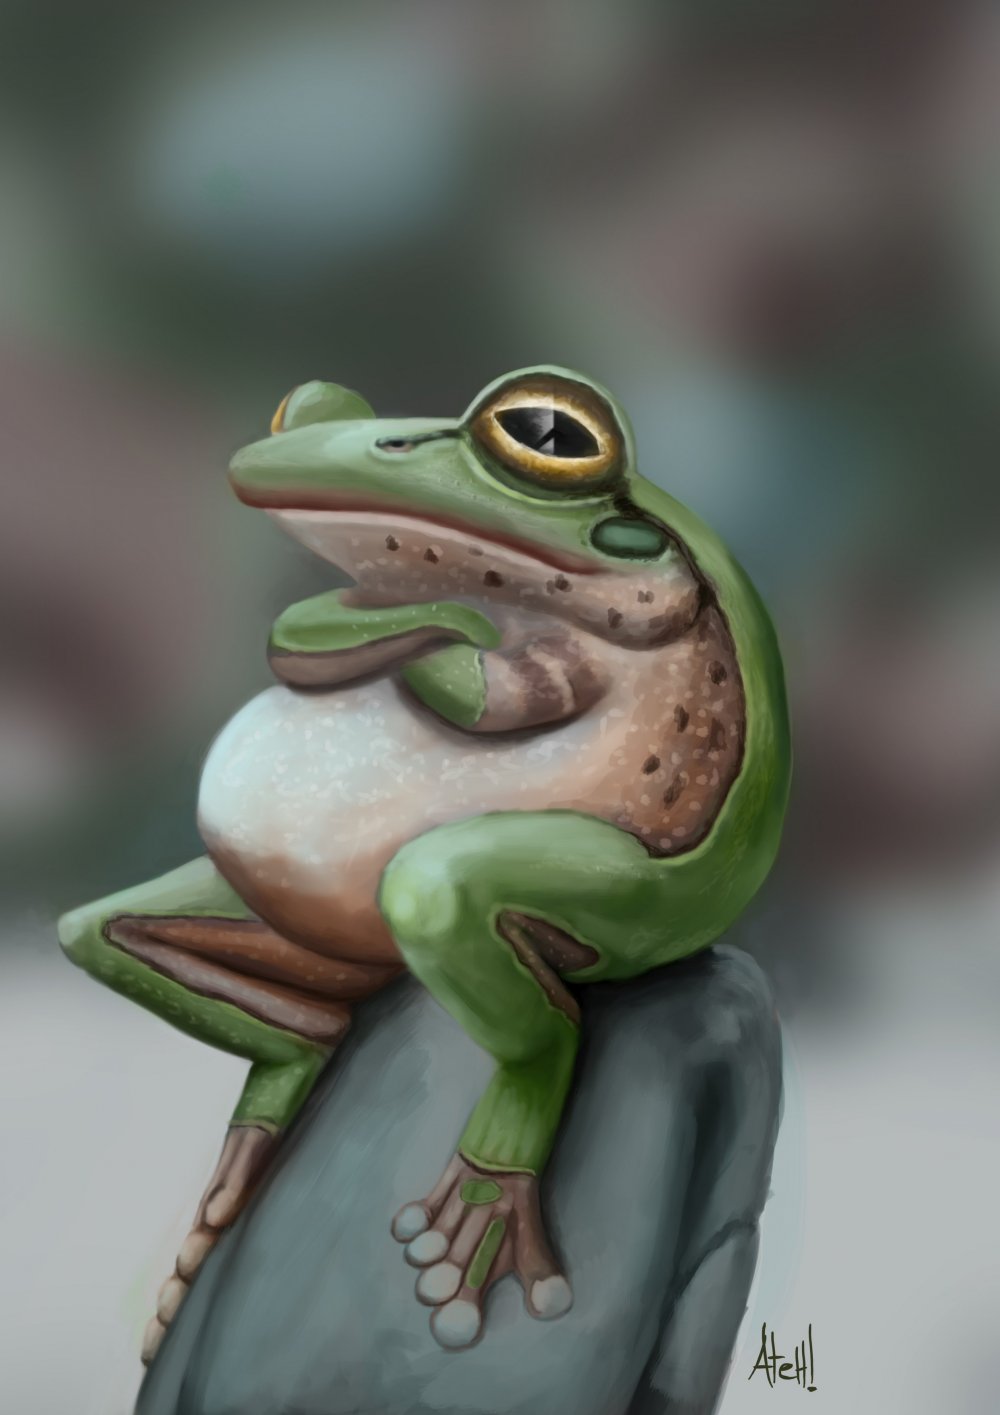 Милая жаба